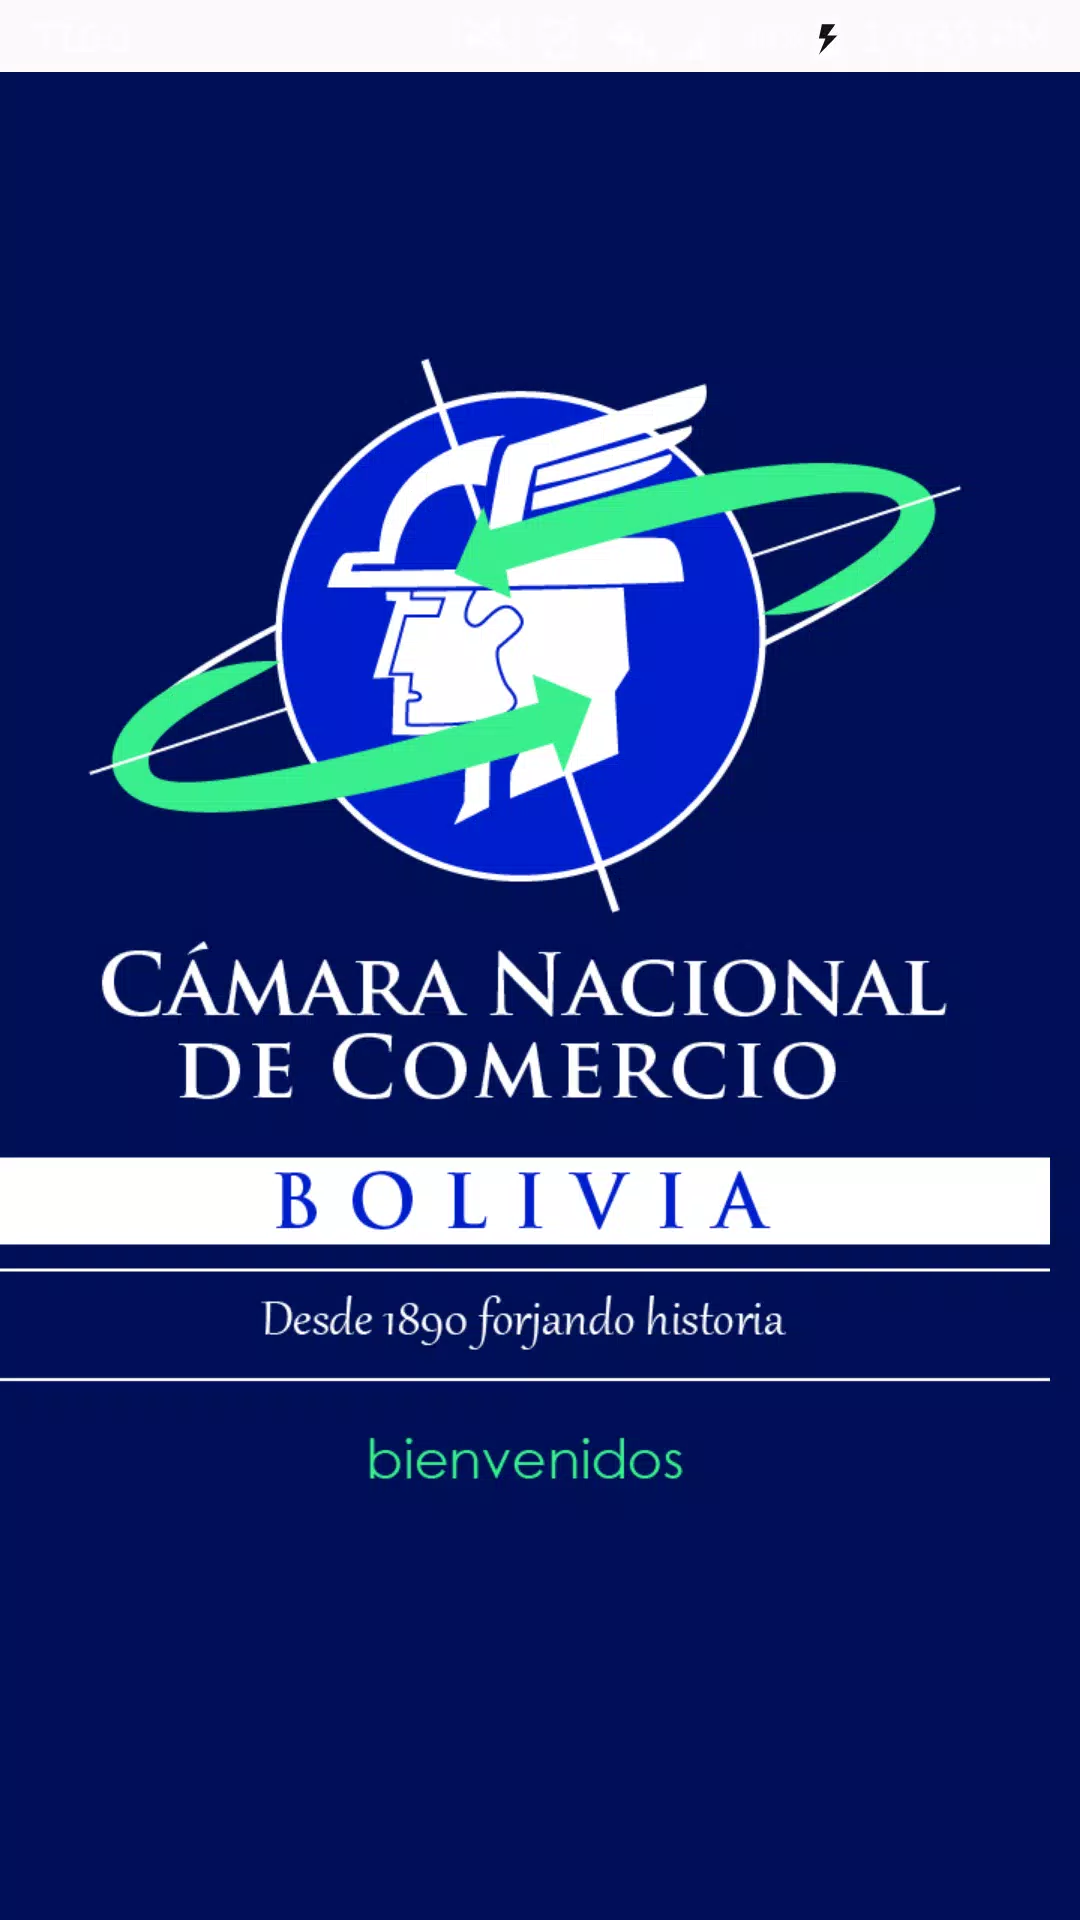 Camara Nacional de Comercio Bolivia APK pour Android Télécharger